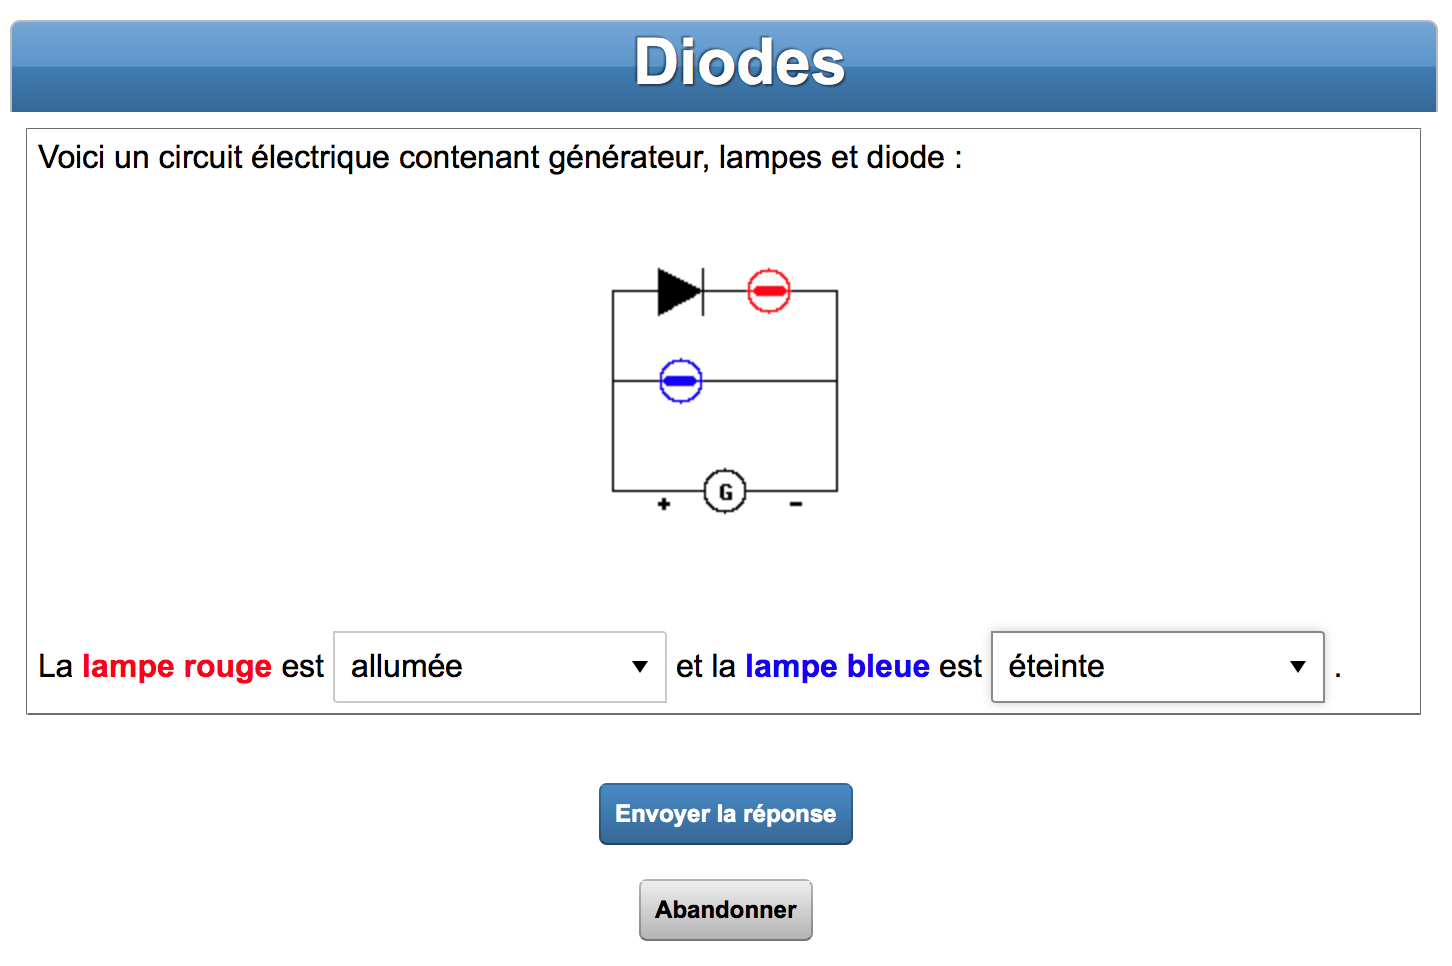 exercice de physique où il faut savoir quelles sont les diodes qui seront allumées dans un circuit électrique.